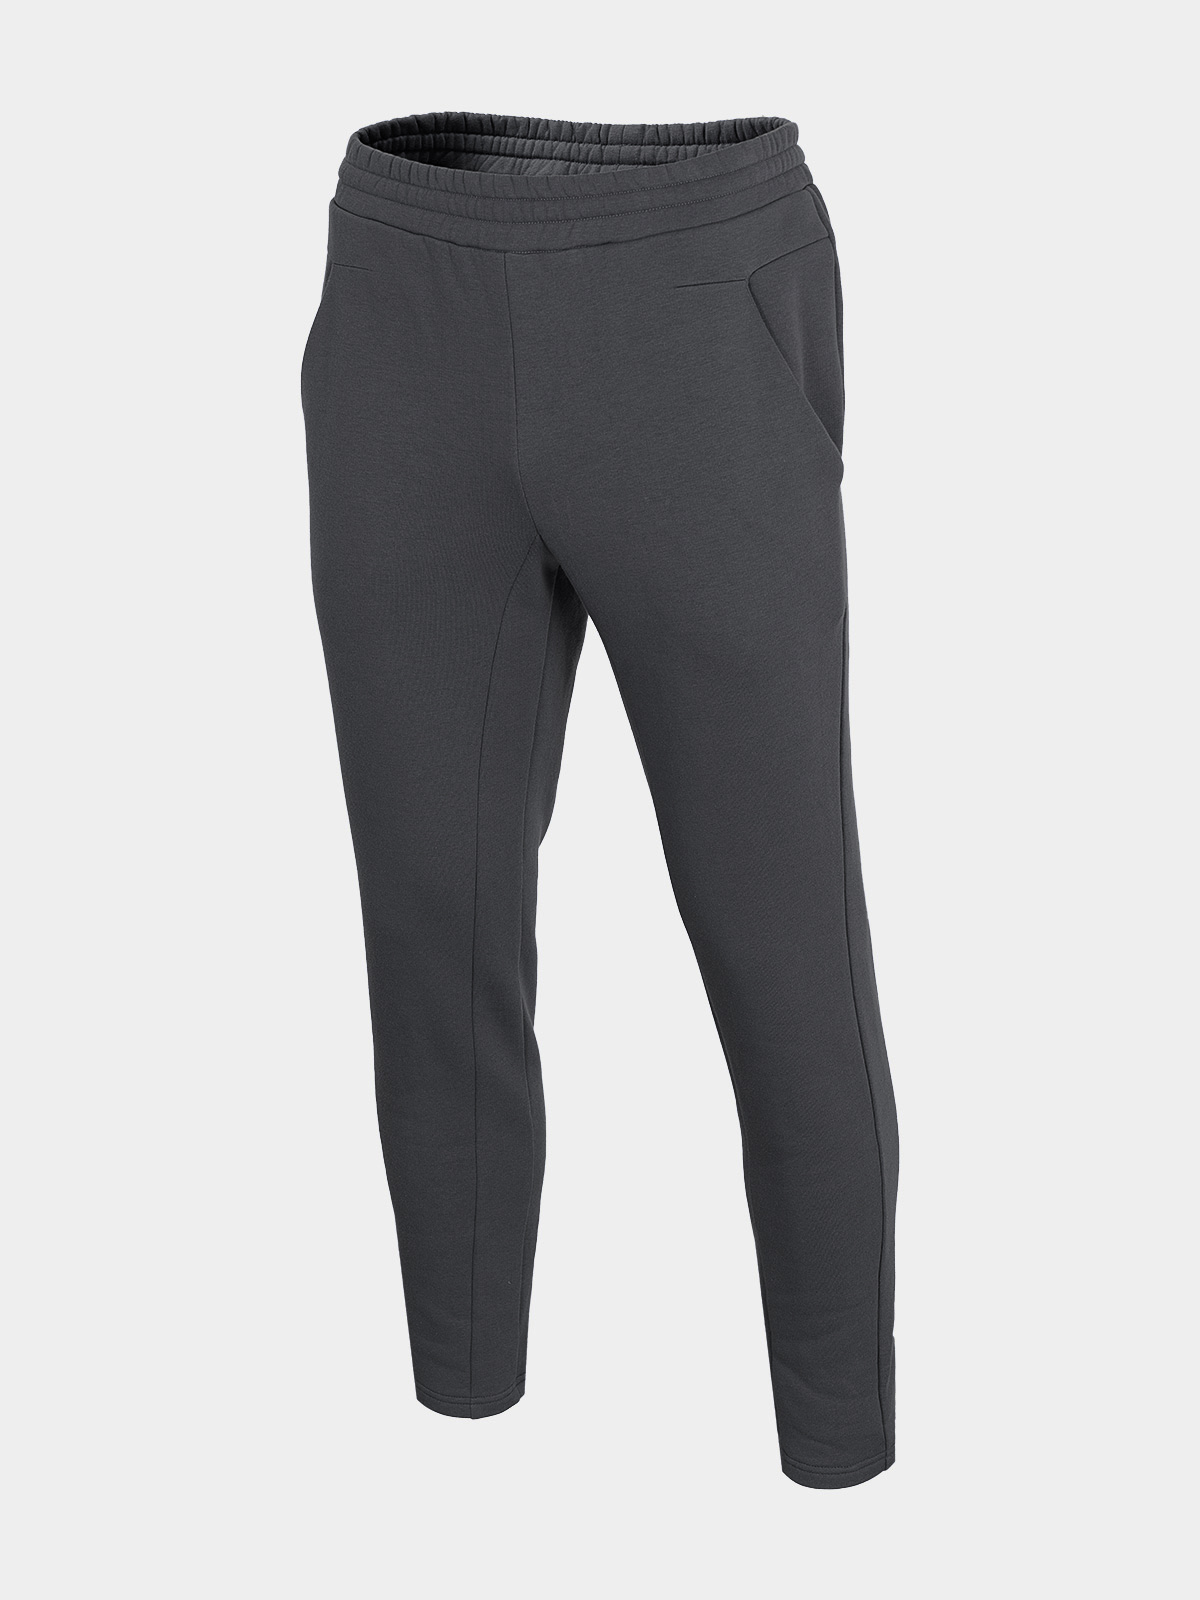 фото Спортивные брюки мужские outhorn hol21-spmd611-22s серые xl